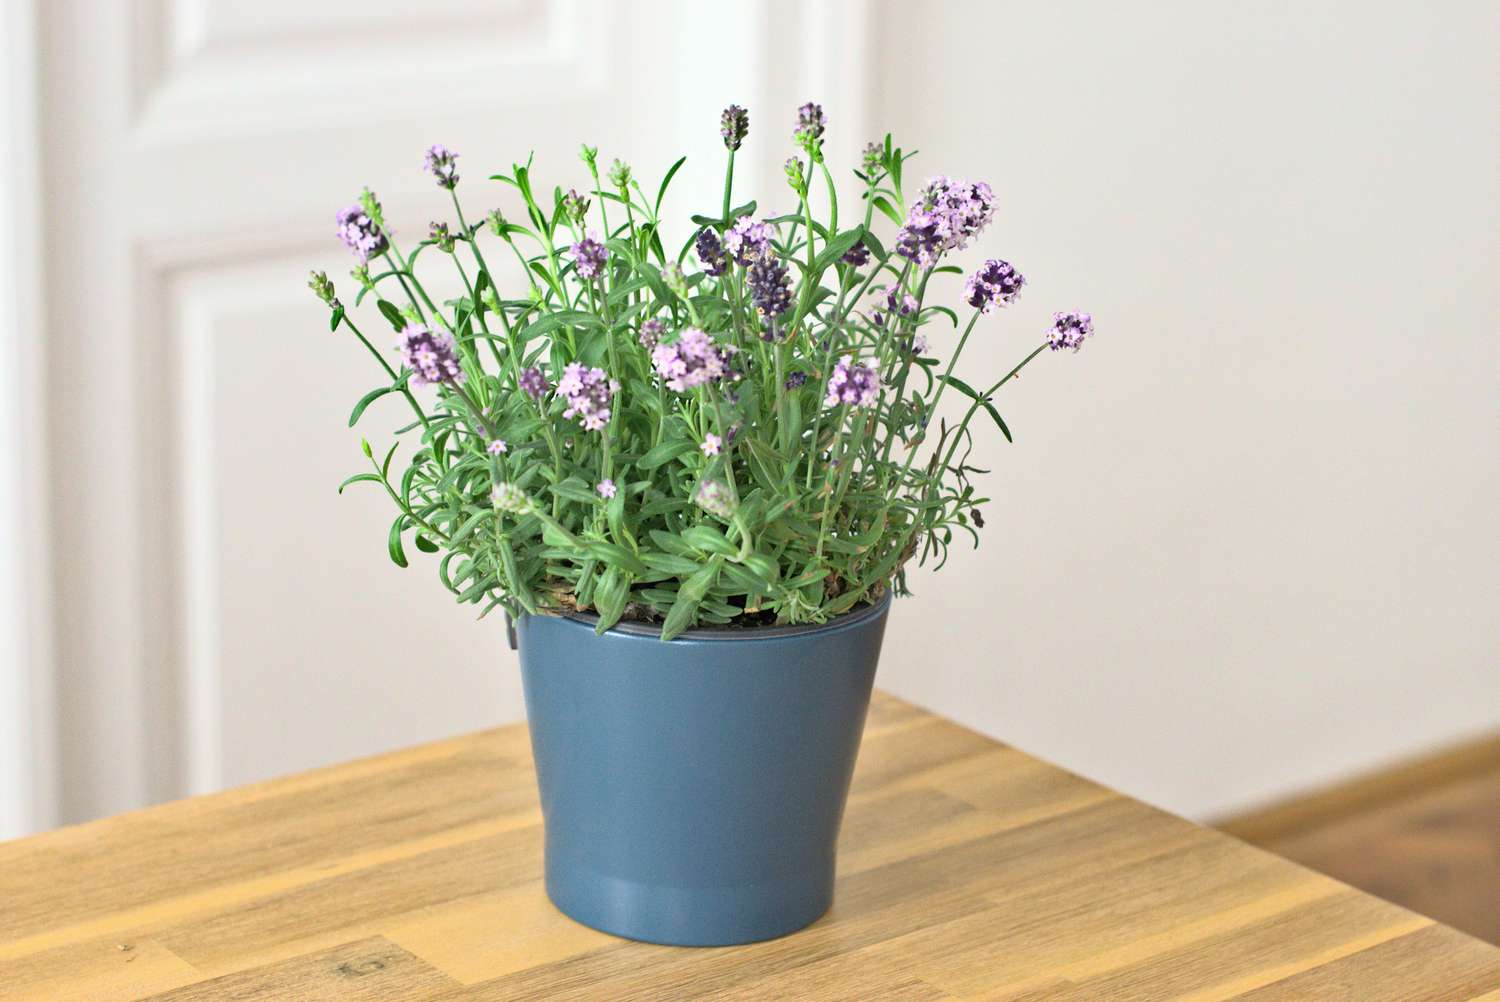 Growing lavender indoors